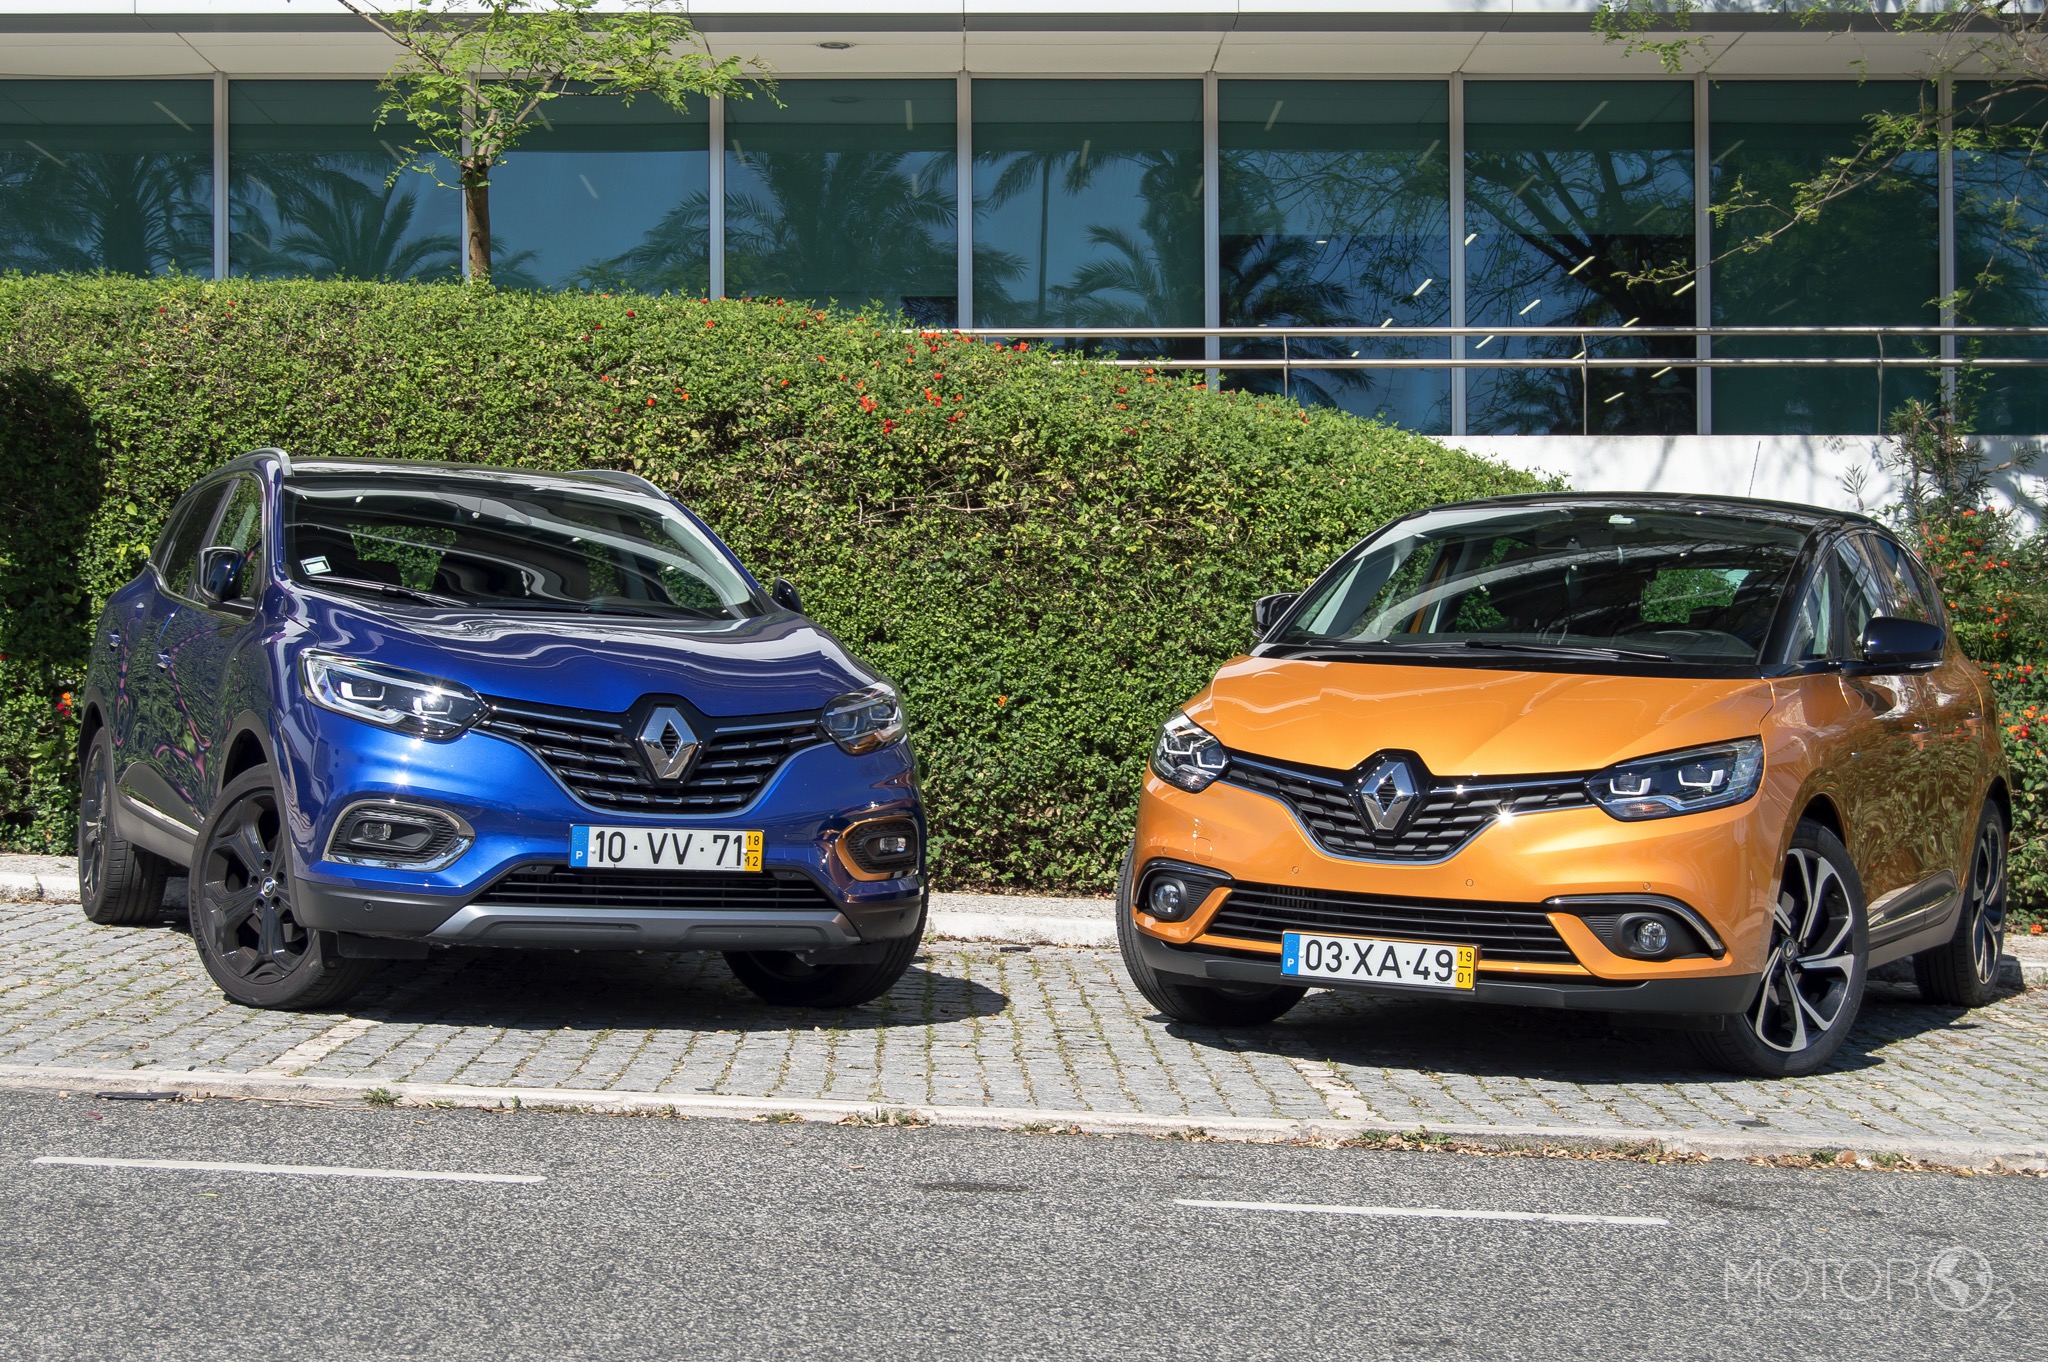 Renault Kadjar ou Scénic? Qual a melhor escolha?